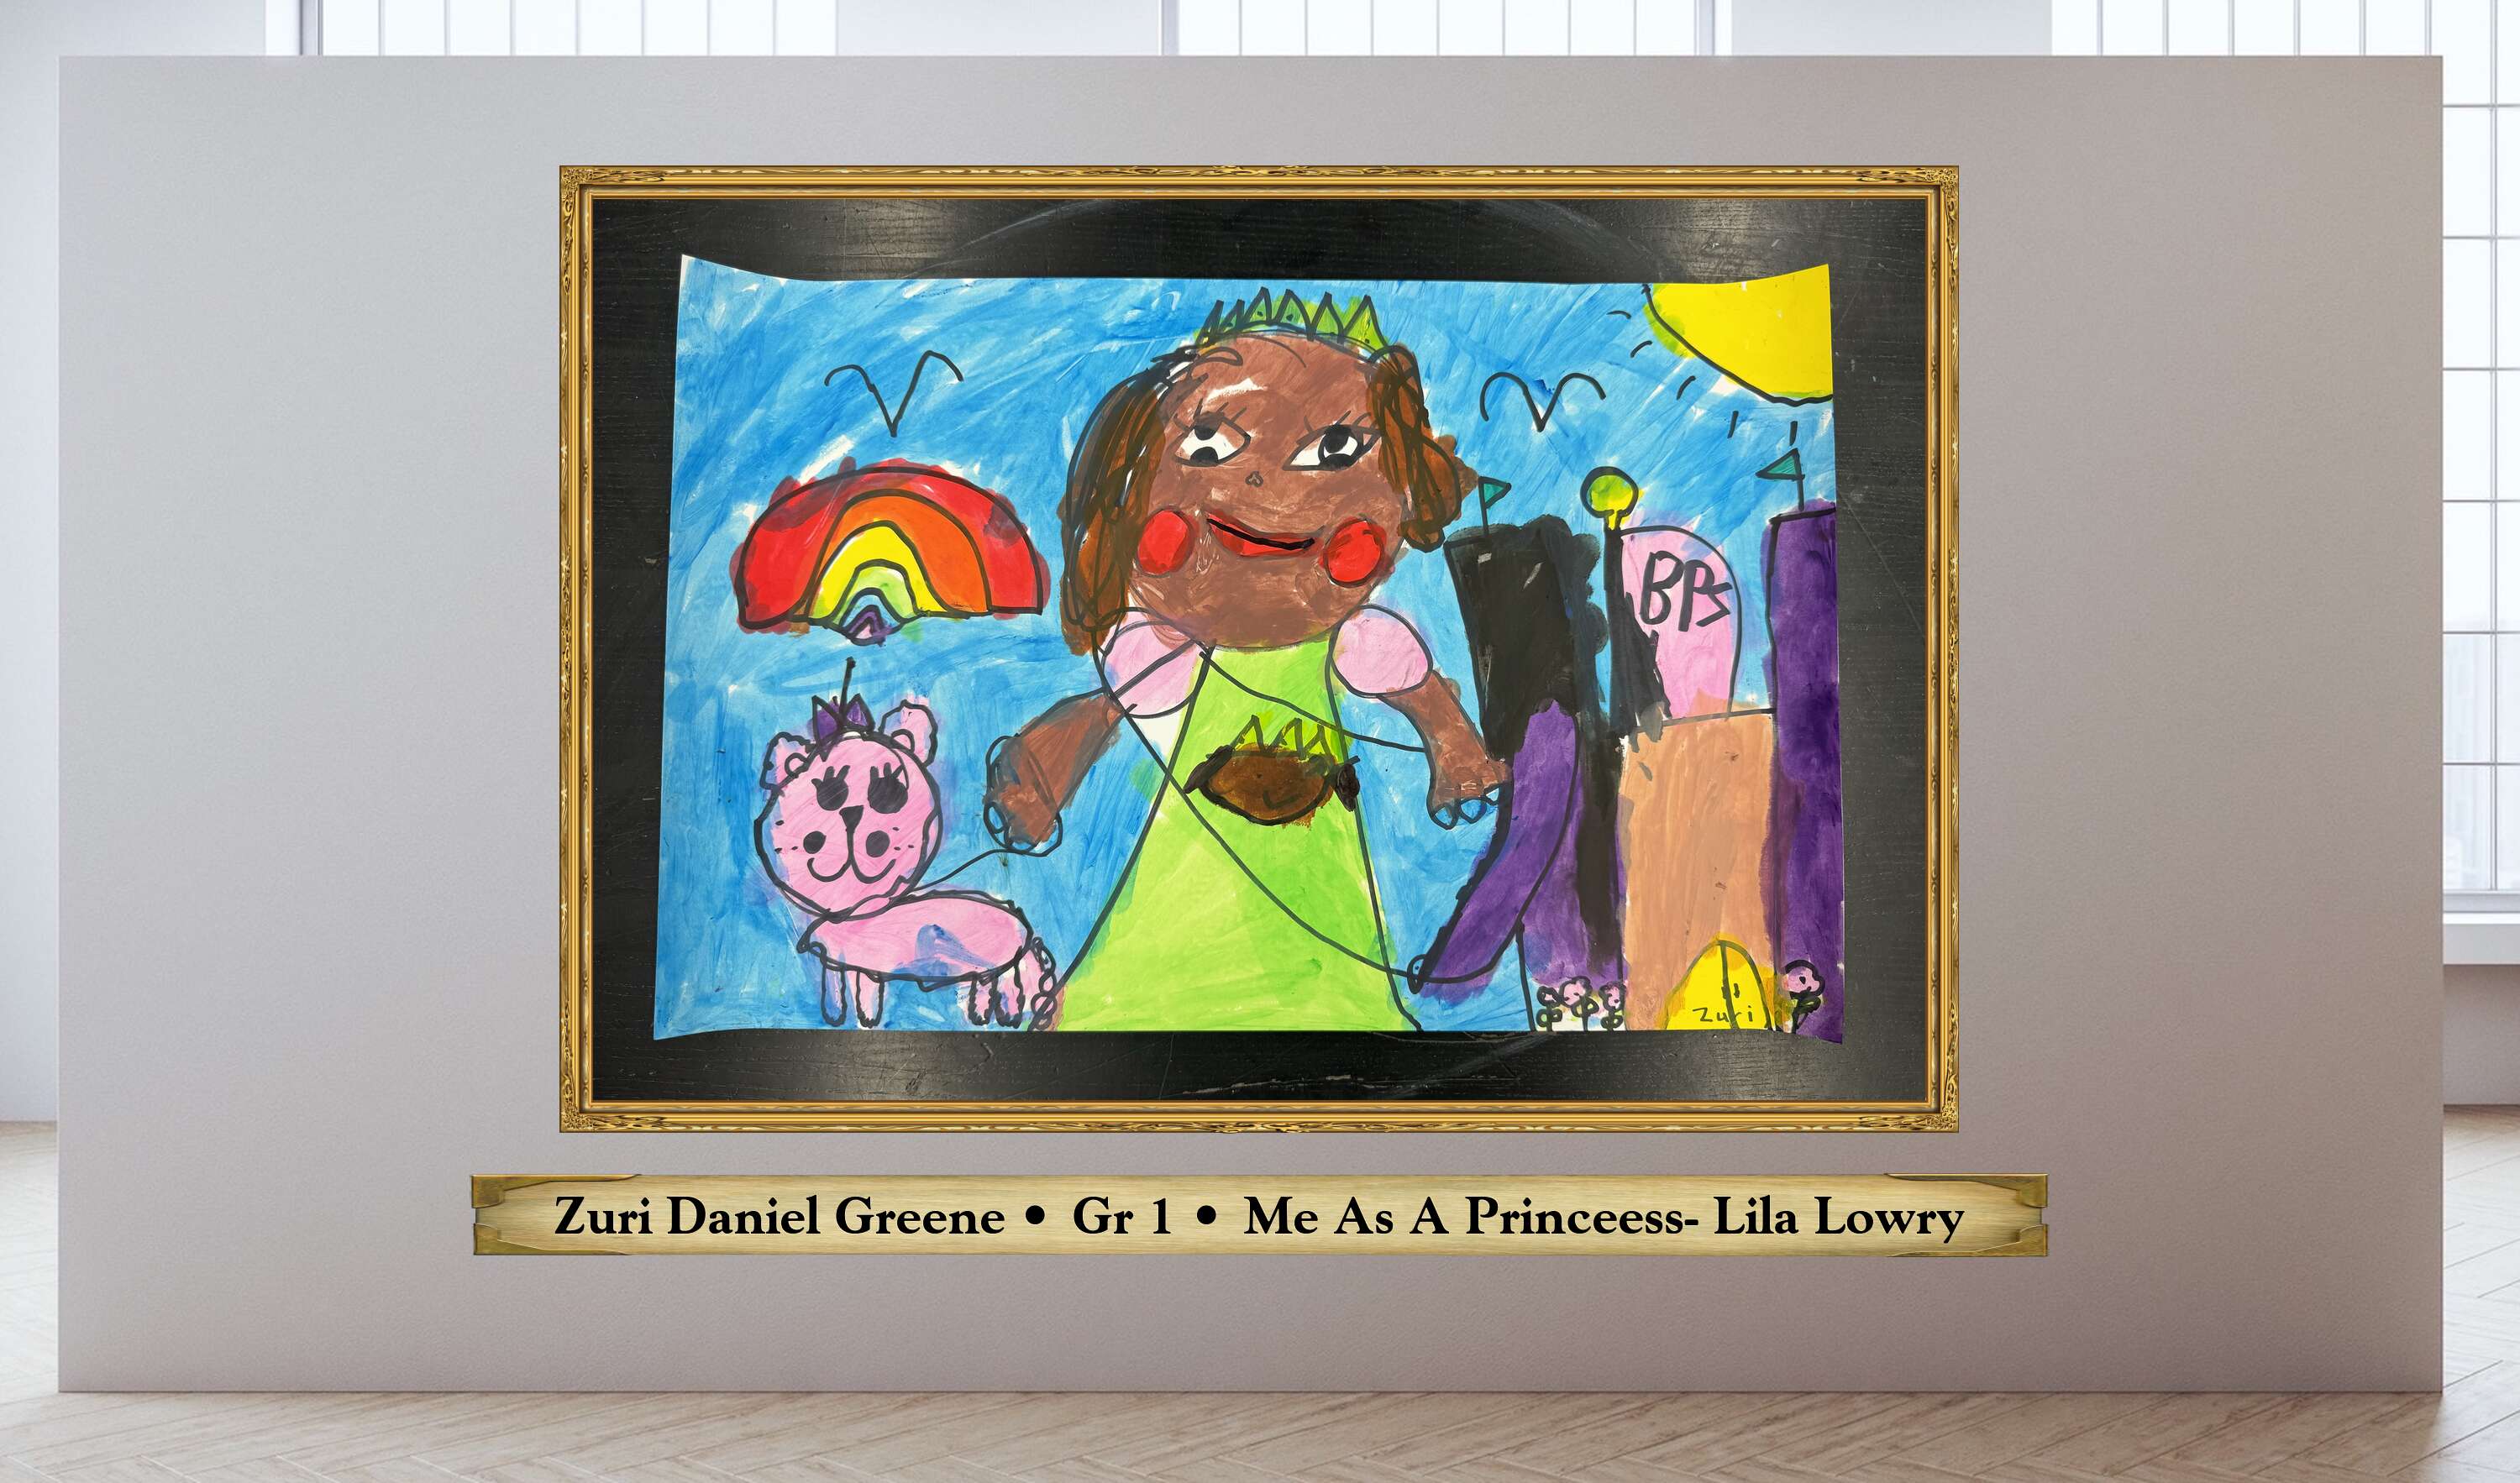 Zuri Daniel Greene • Gr 1 • Me As A Princeess- Lila Lowry